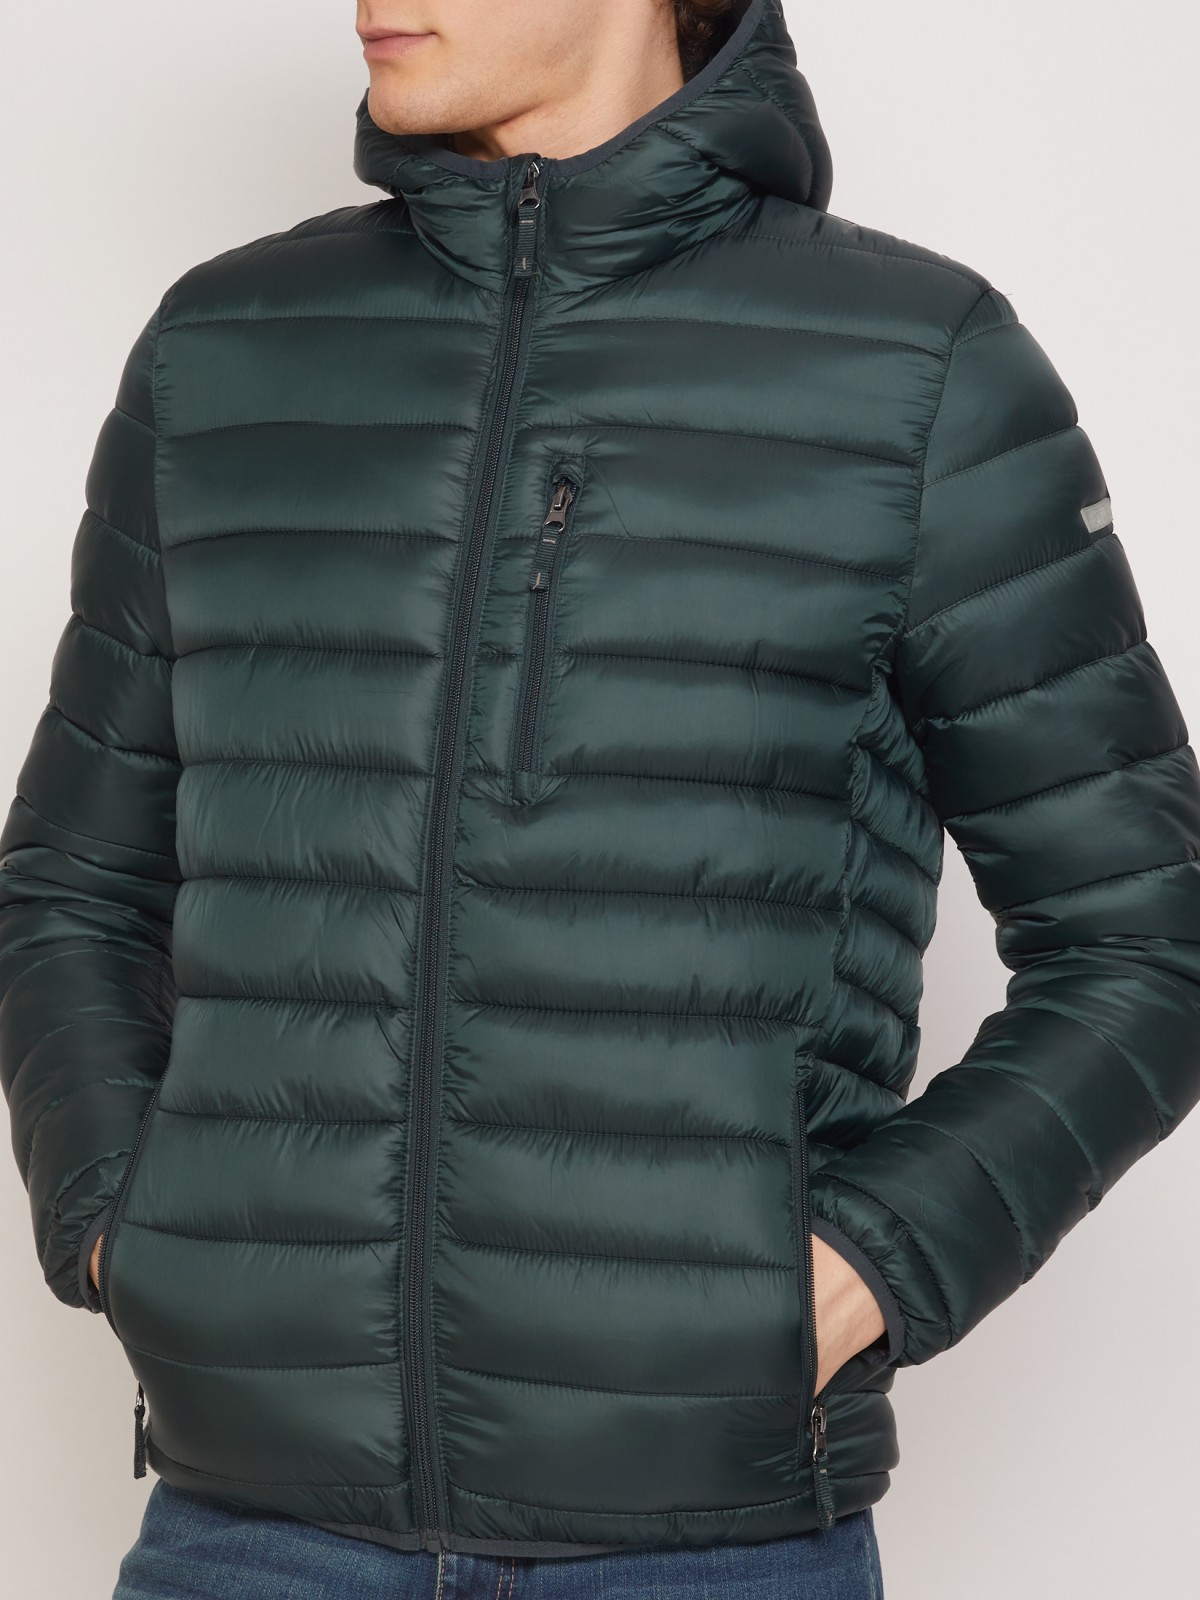 Ультралёгкая стёганая куртка с капюшоном zolla 011335114224, цвет темно-зеленый, размер XS - фото 3